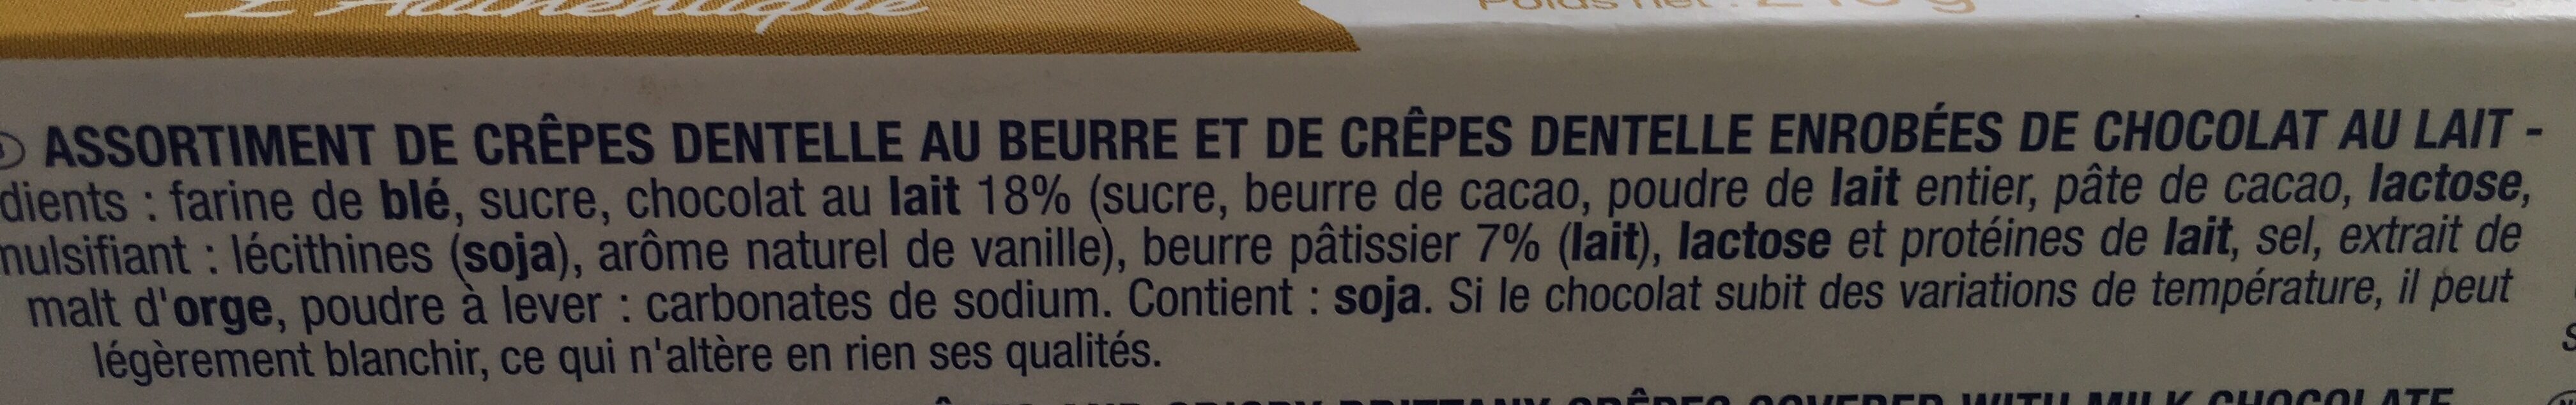 Assortiment crêpes dentelle - Ingredients - fr